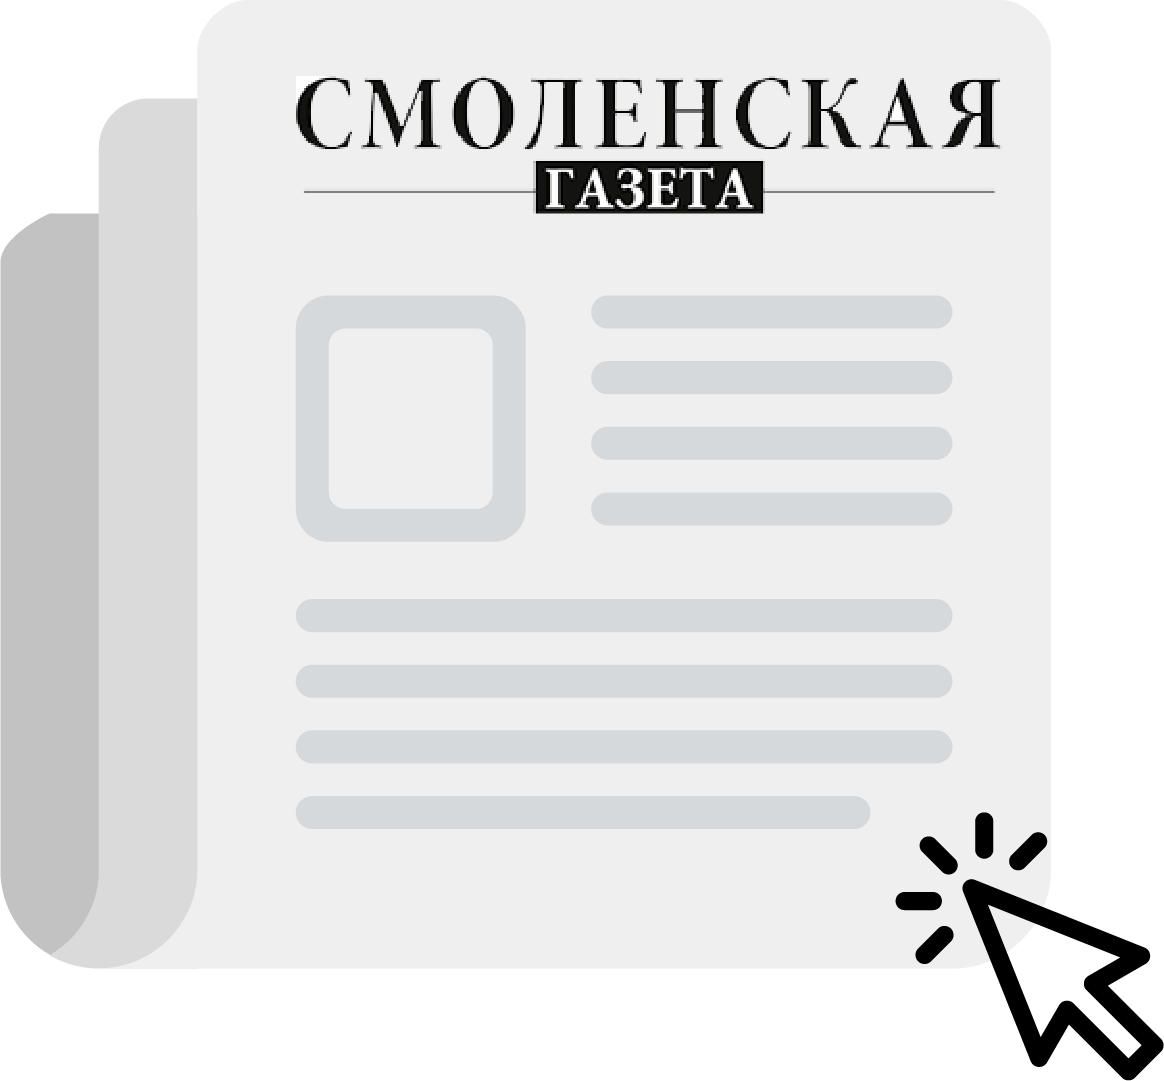 Смоленская газета №51-52 (1437-1438)